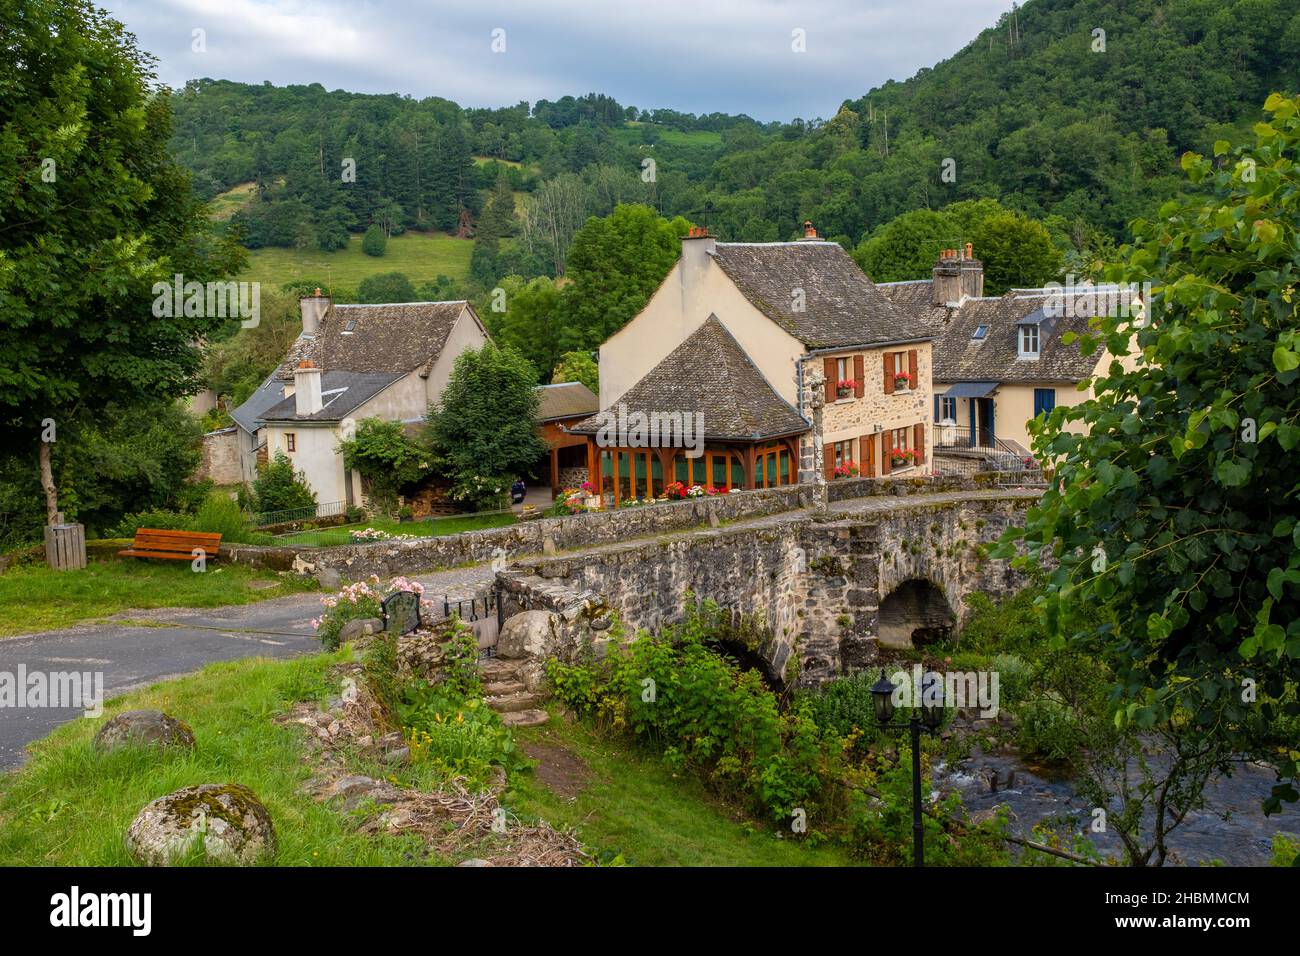 Vieux pont en pierre de la voie de Saint-Jacques en France centrale, pris sur un après-midi d'été partiellement couvert près de la vallée de la rivière Lot, sans personne Banque D'Images